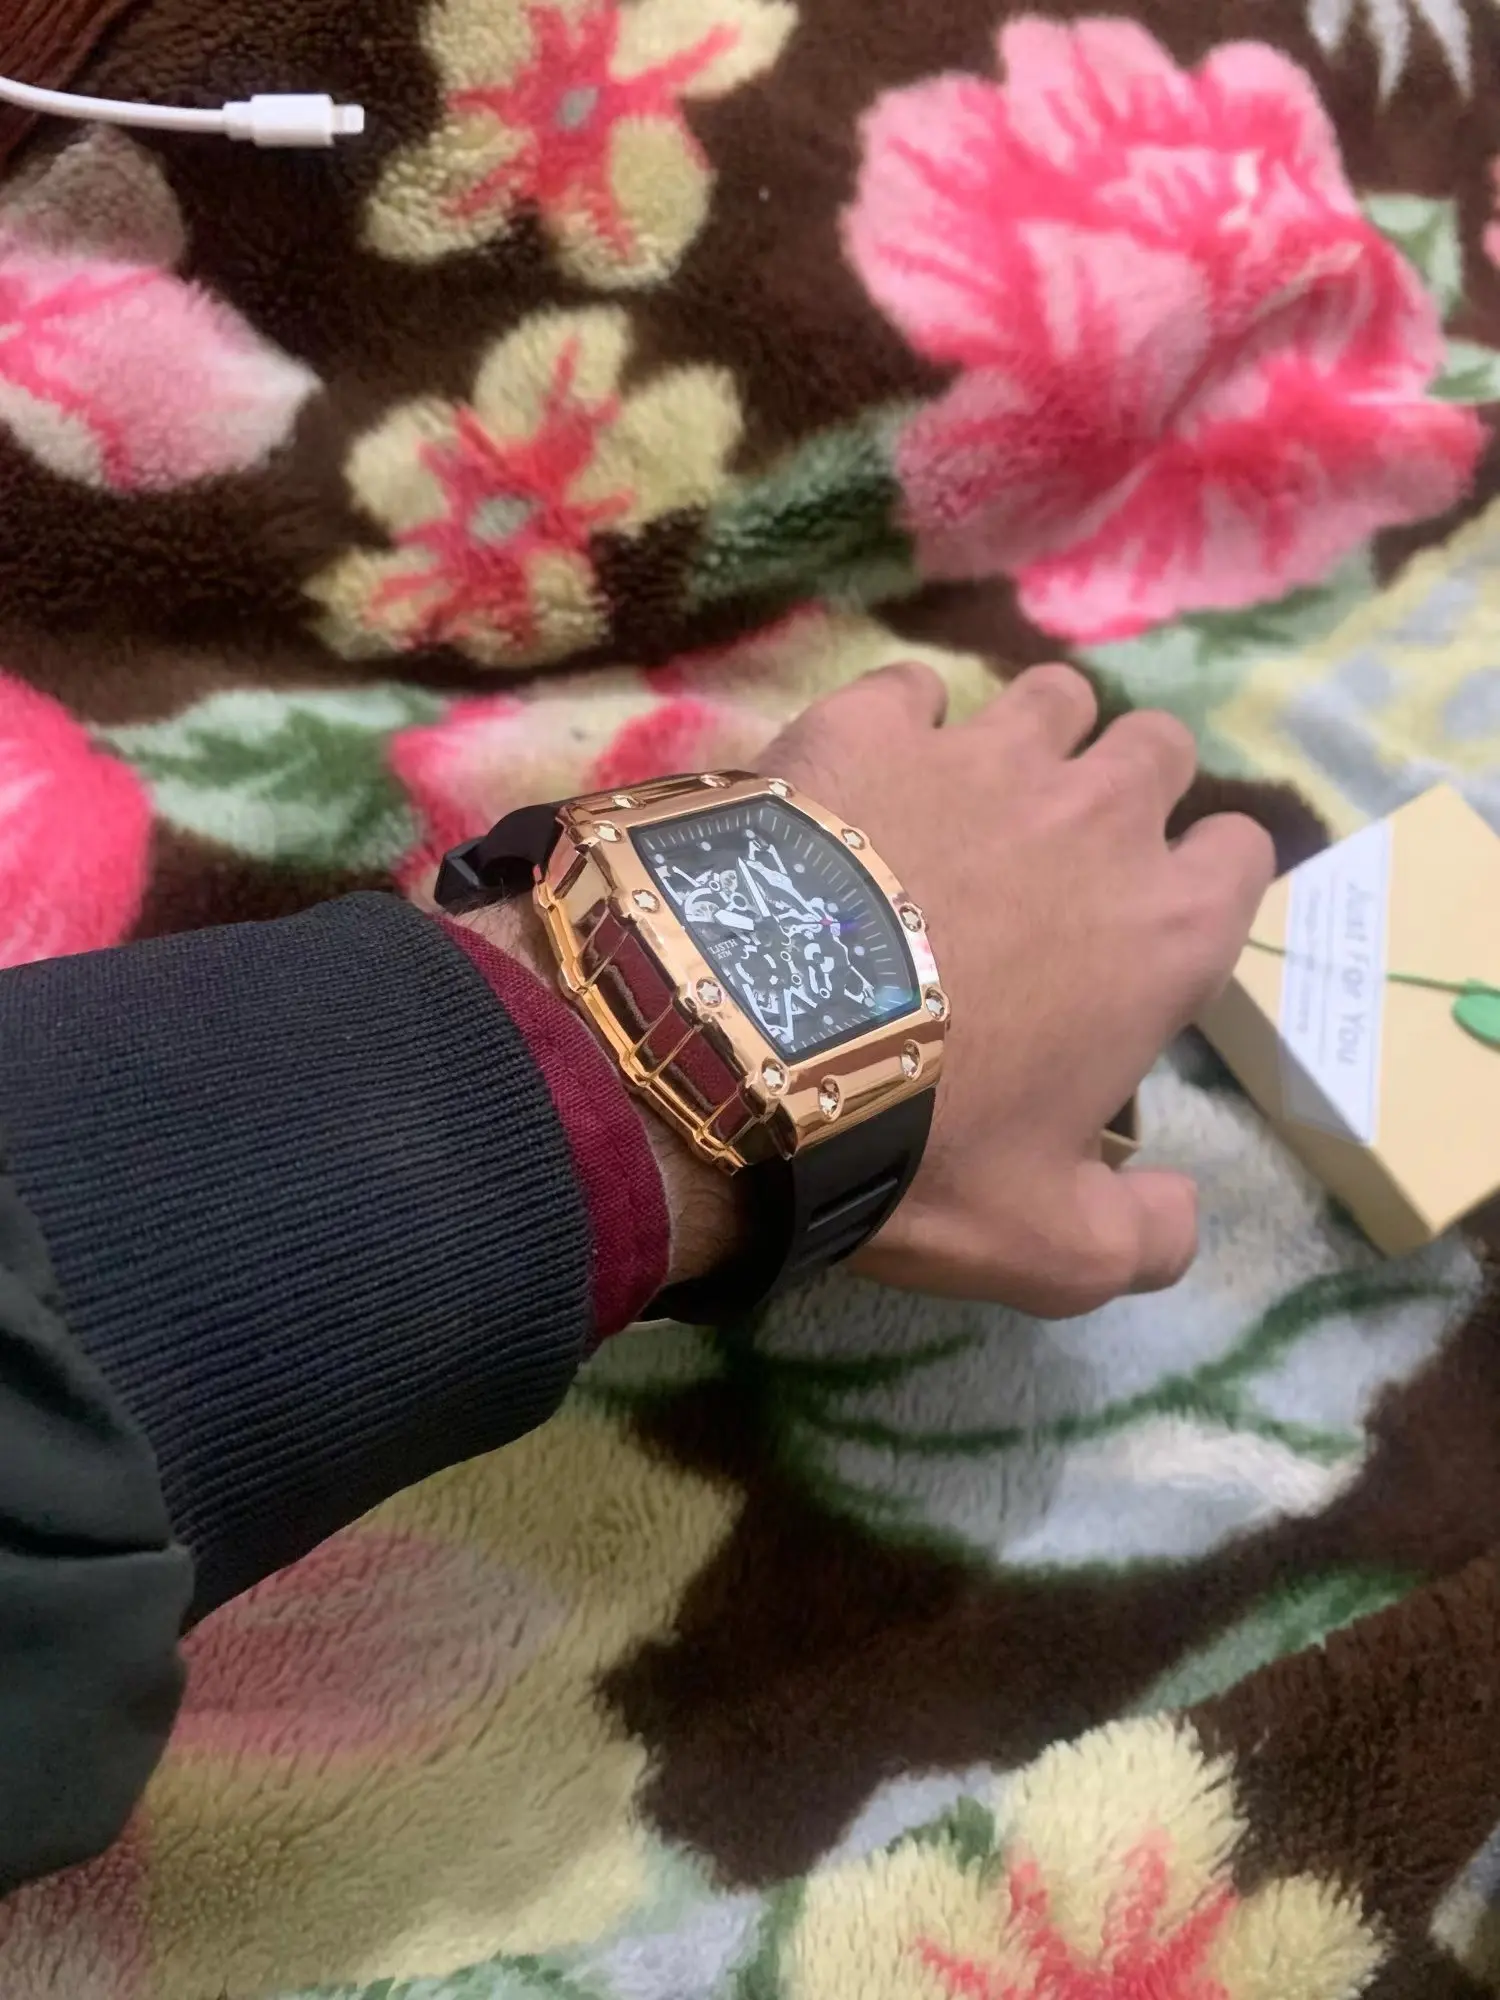 Značka pánské hodinky móda automatický pohyb barel světelný vodotěsný hodiny sportovní male's silikon řemen křemen náramkové hodinky nový